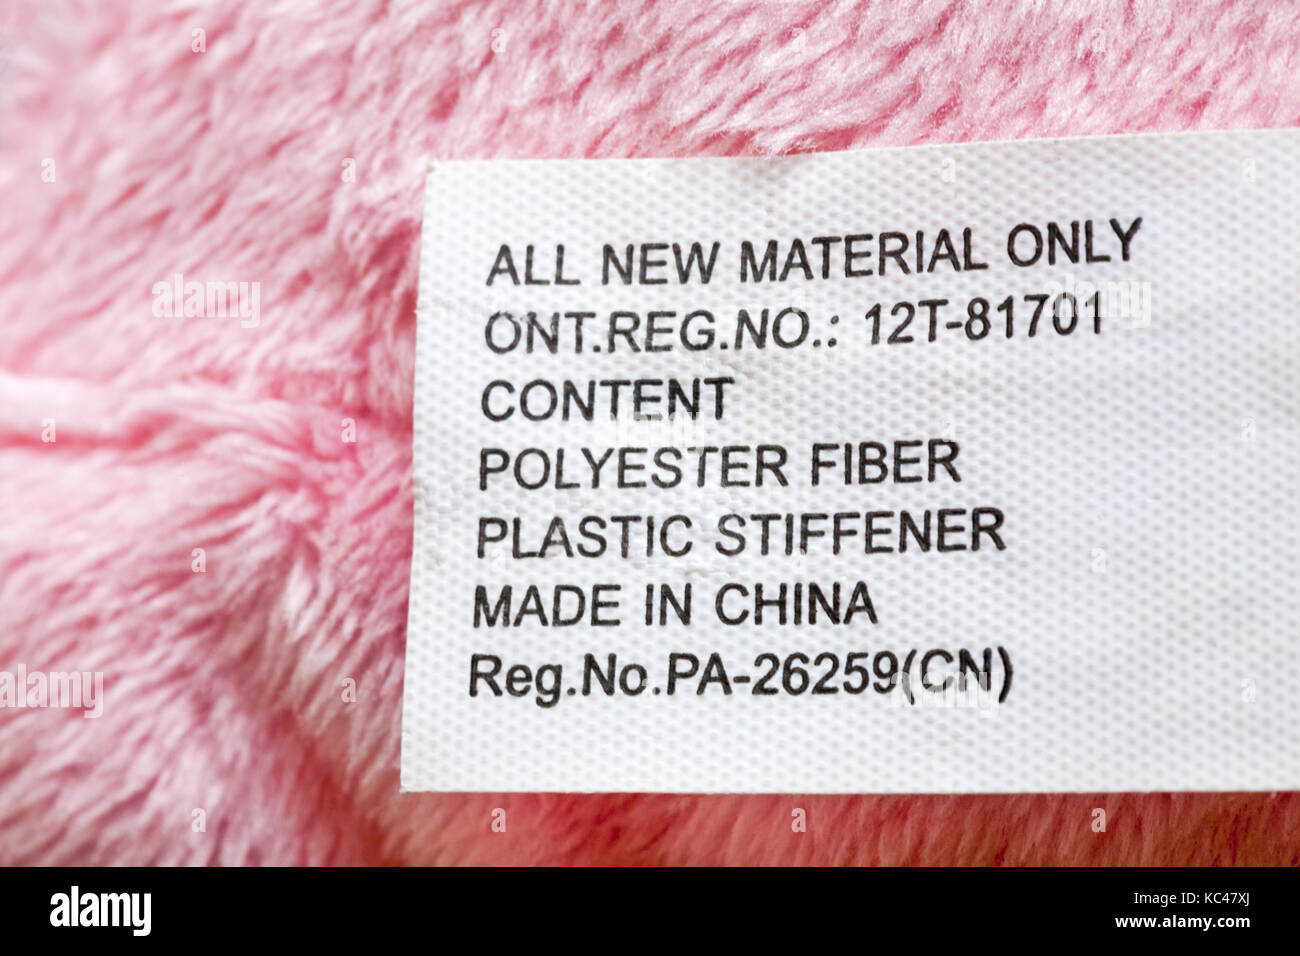 Label in Spielzeug Puppe - Alle neuen Material nur Inhalt polyester Kunststoff Verstärkung in China hergestellt - im UK Vereinigtes Königreich, Großbritannien verkauft. Stockfoto